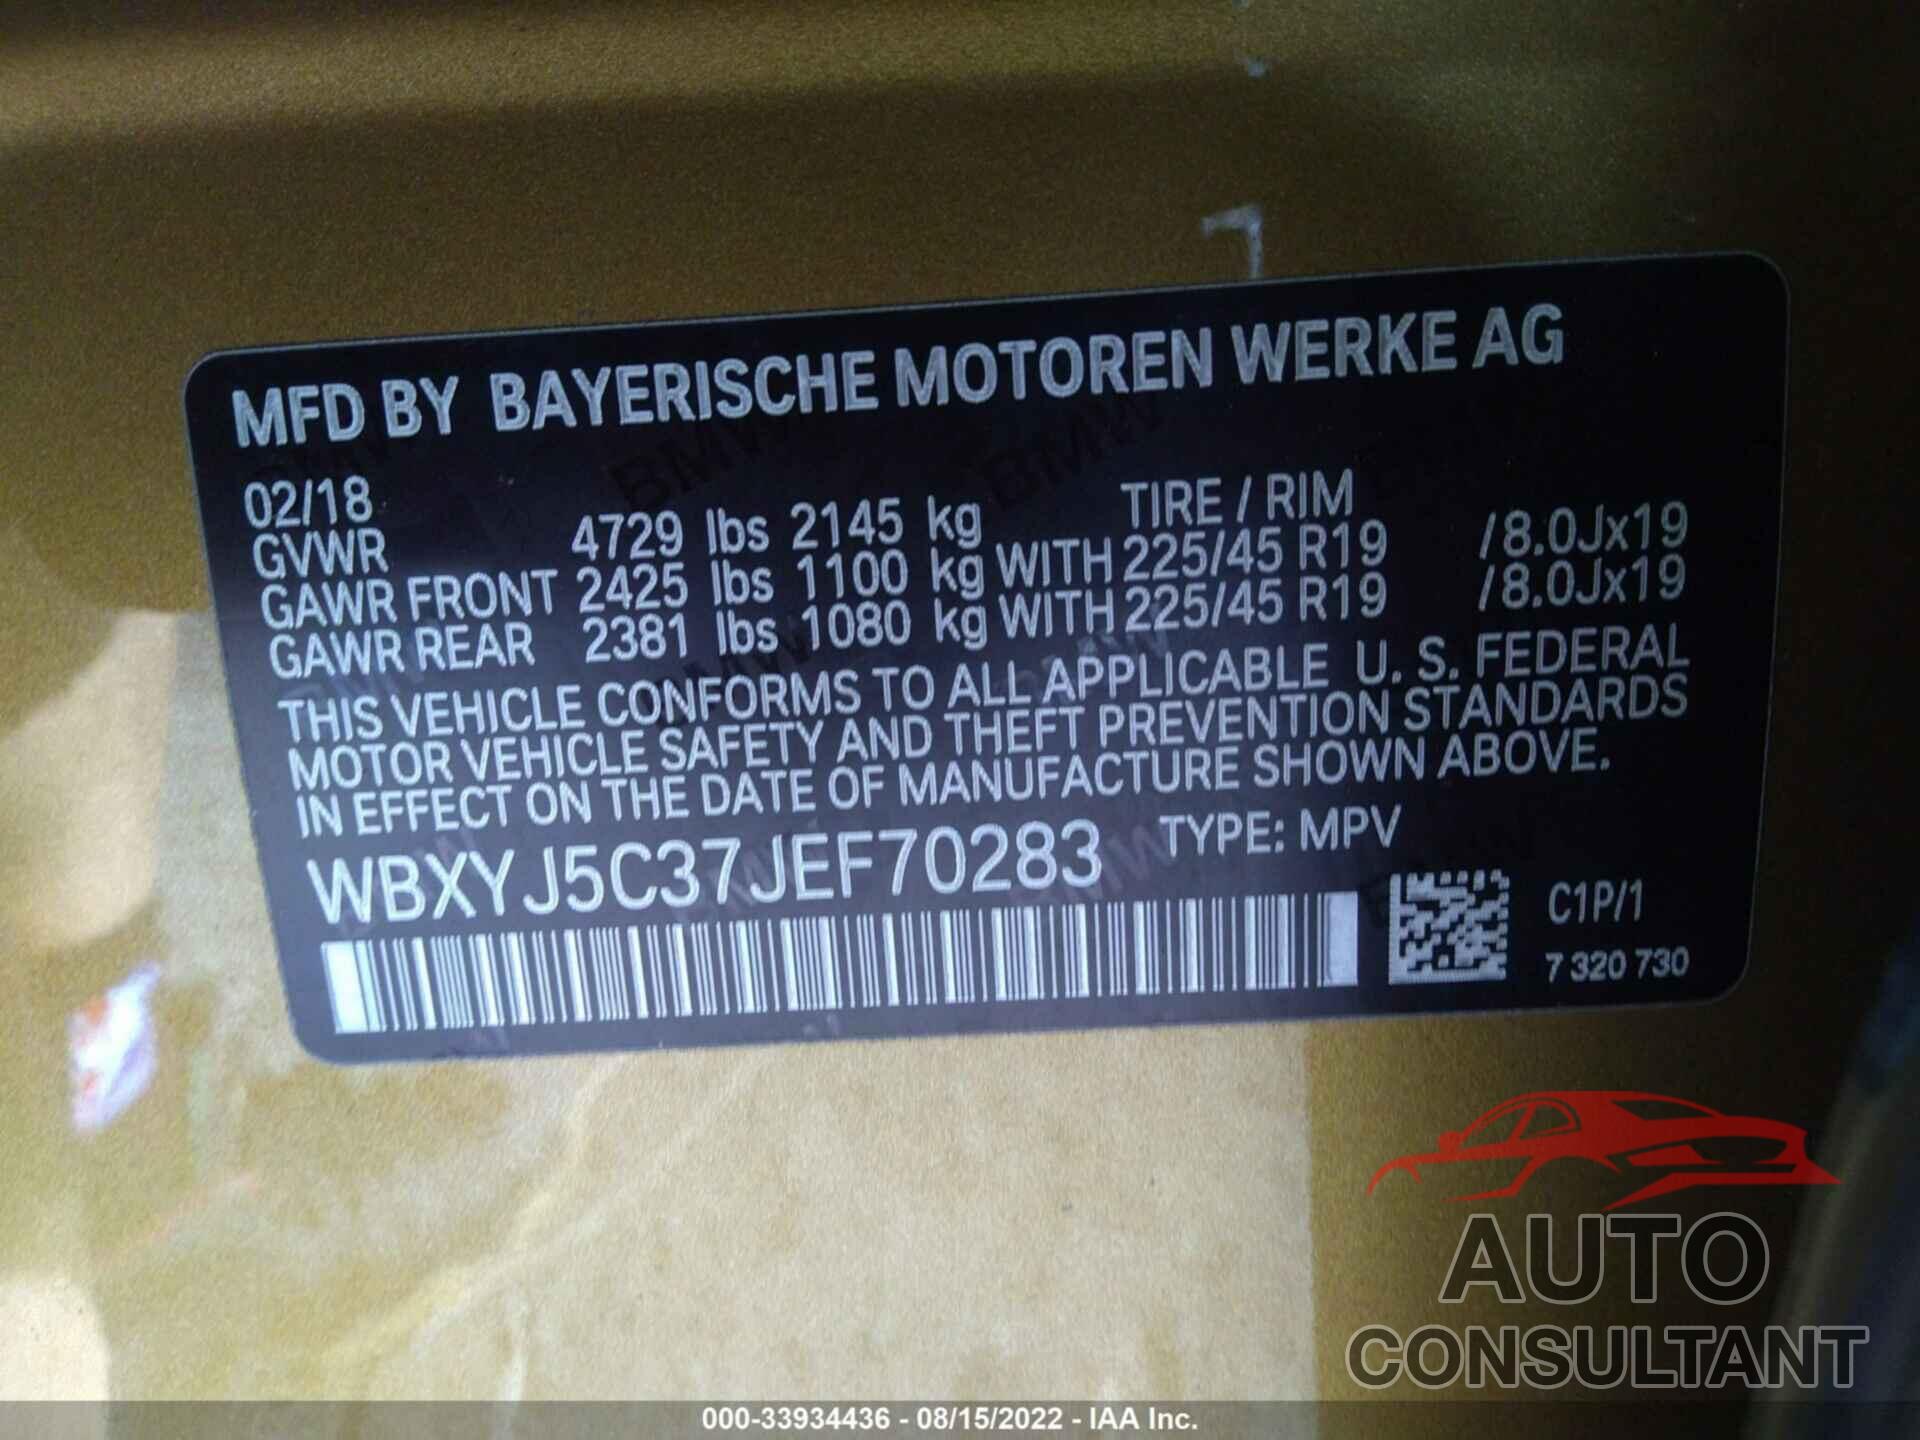 BMW X2 2018 - WBXYJ5C37JEF70283